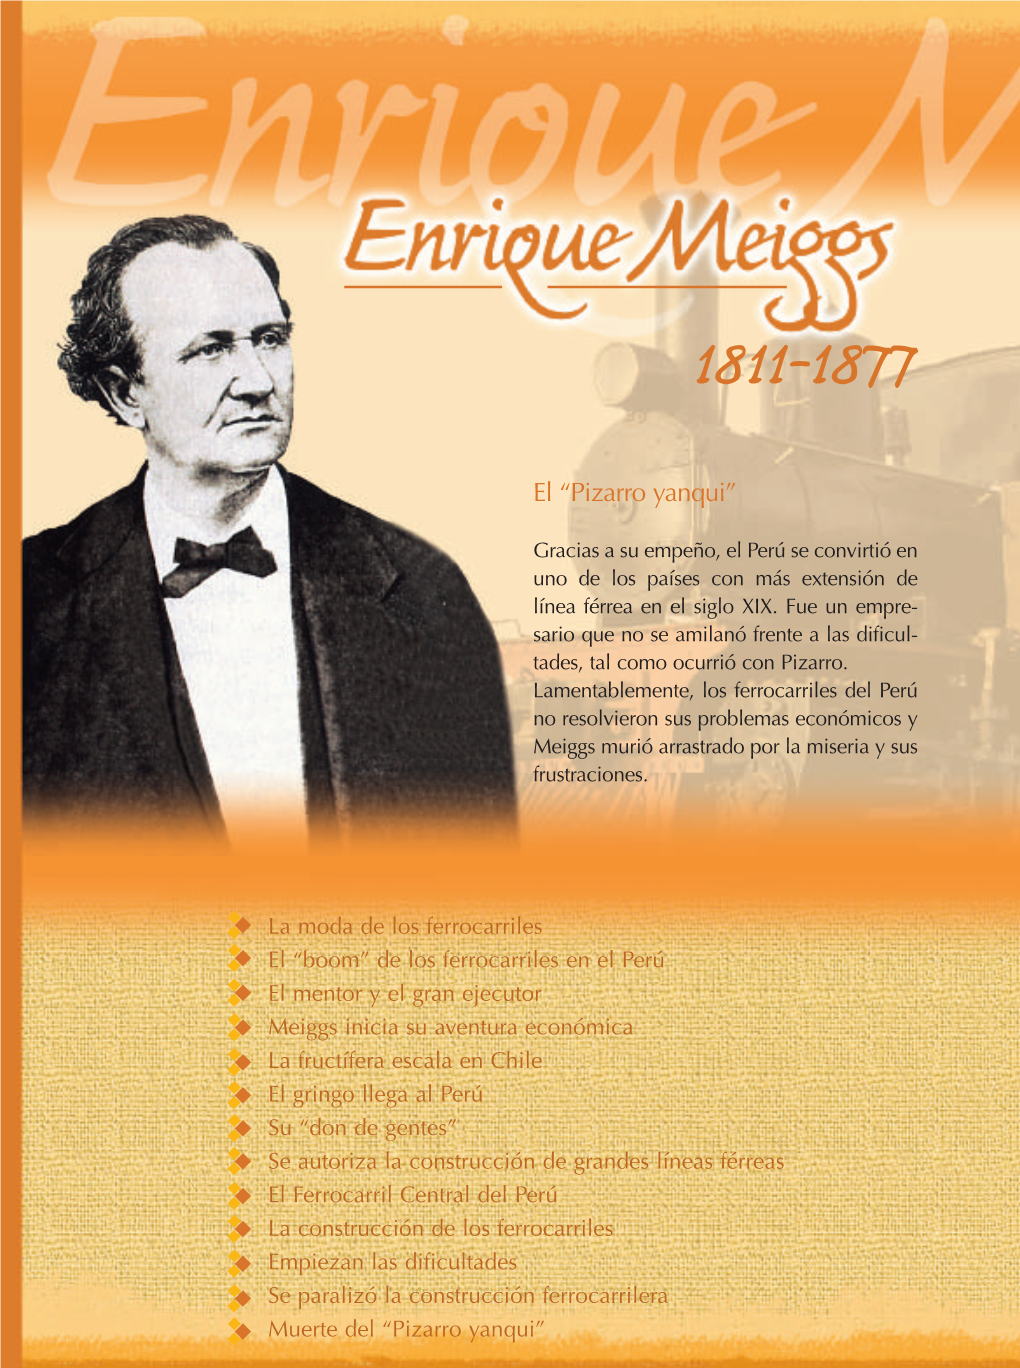 Enrique Meiggs Se Paralizó La Construcción Ferrocarrilera Muerte Del “Pizarro Yanqui” Enrique Meiggs 1811-1877